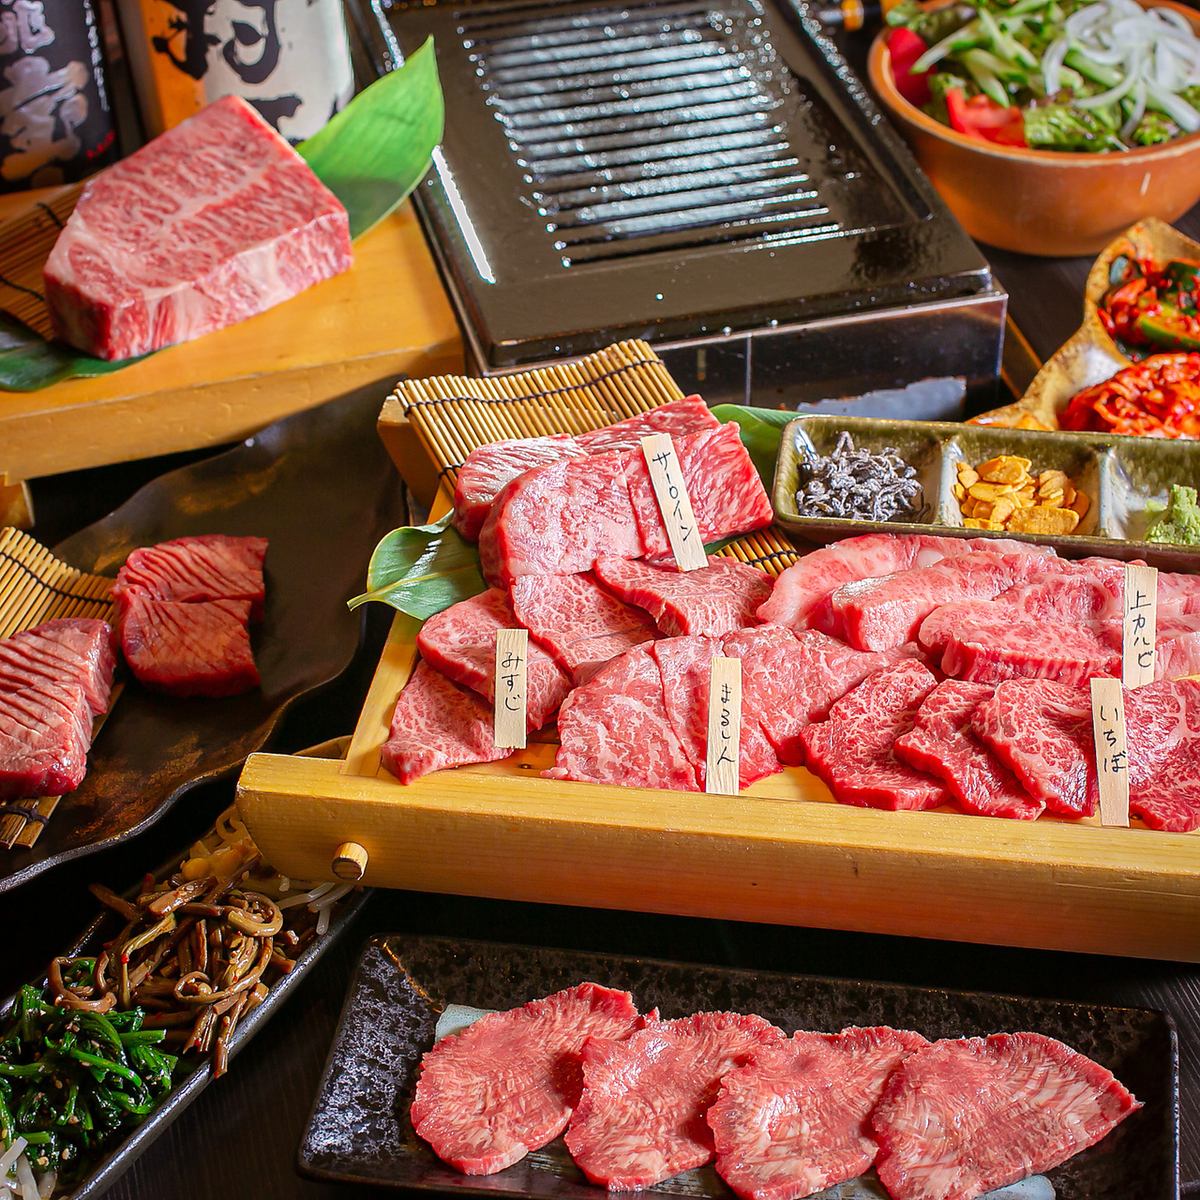 ◇享受店主精心挑选的稀有食物◇专注于日本黑牛肉和国产牛肉，非常美味的烤肉♪